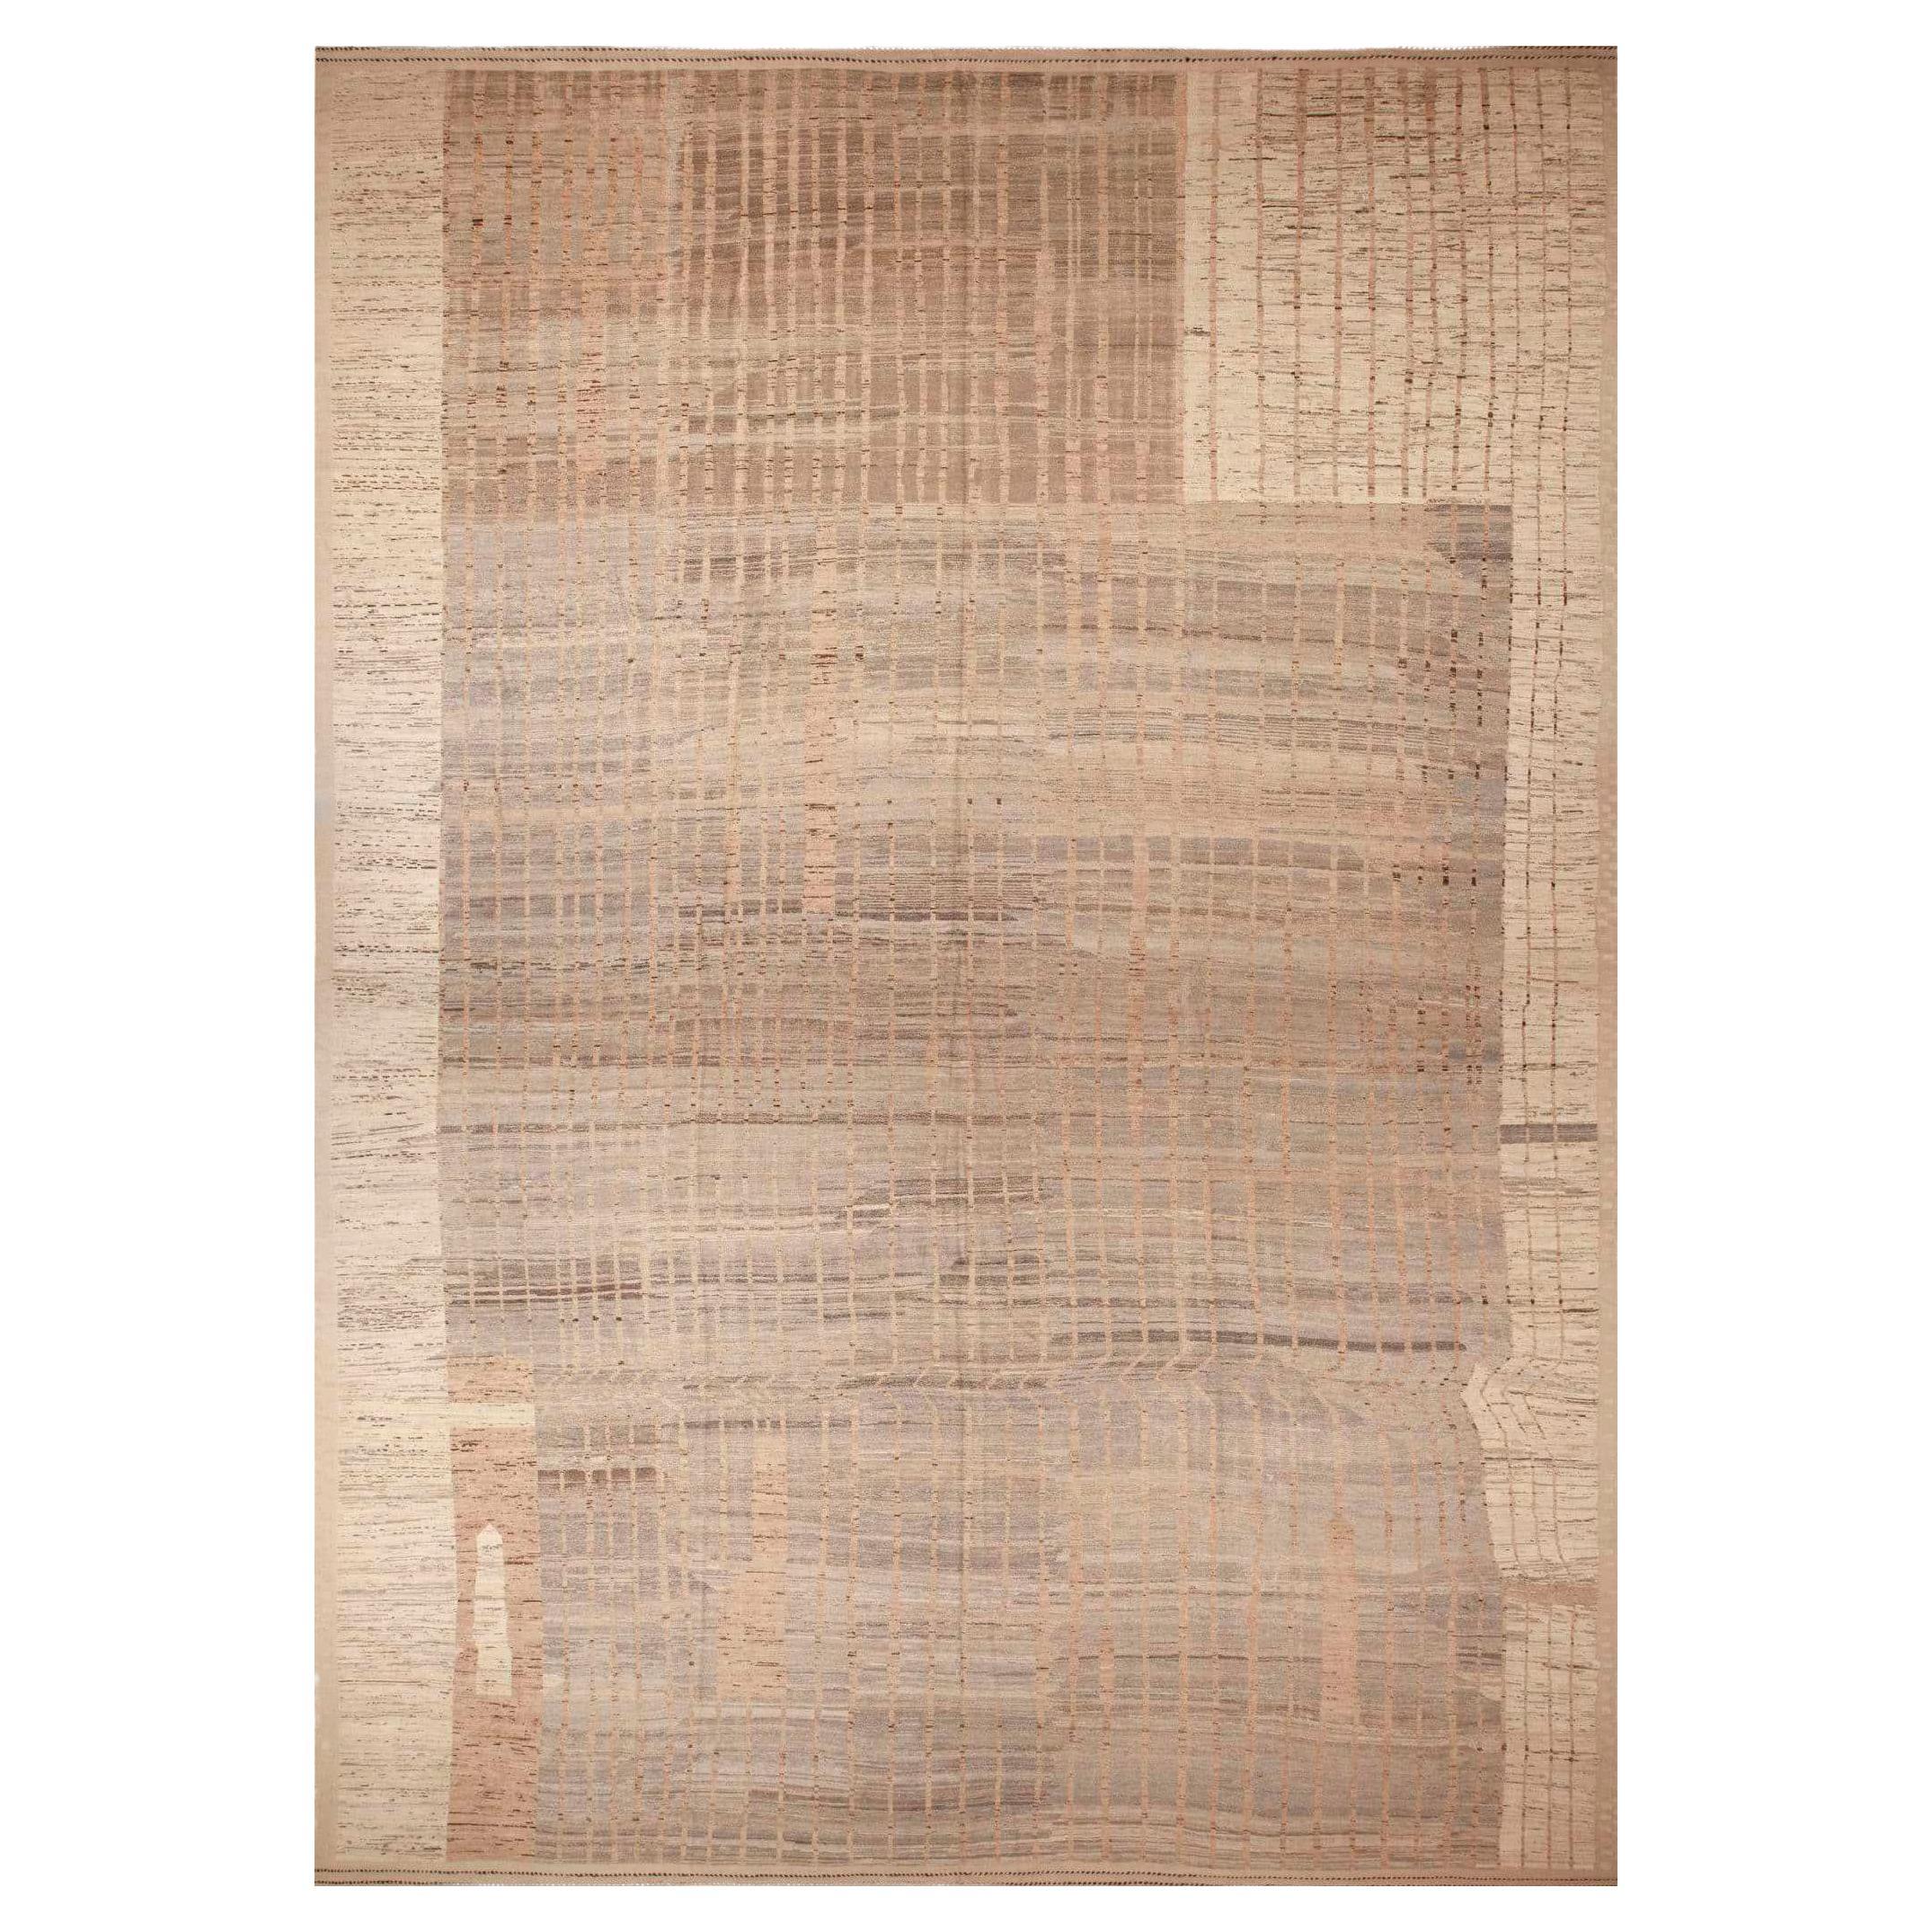 Tapis moderne tribal, géométrique et surdimensionné de la collection Nazmiyal 17'7" x 27'3"